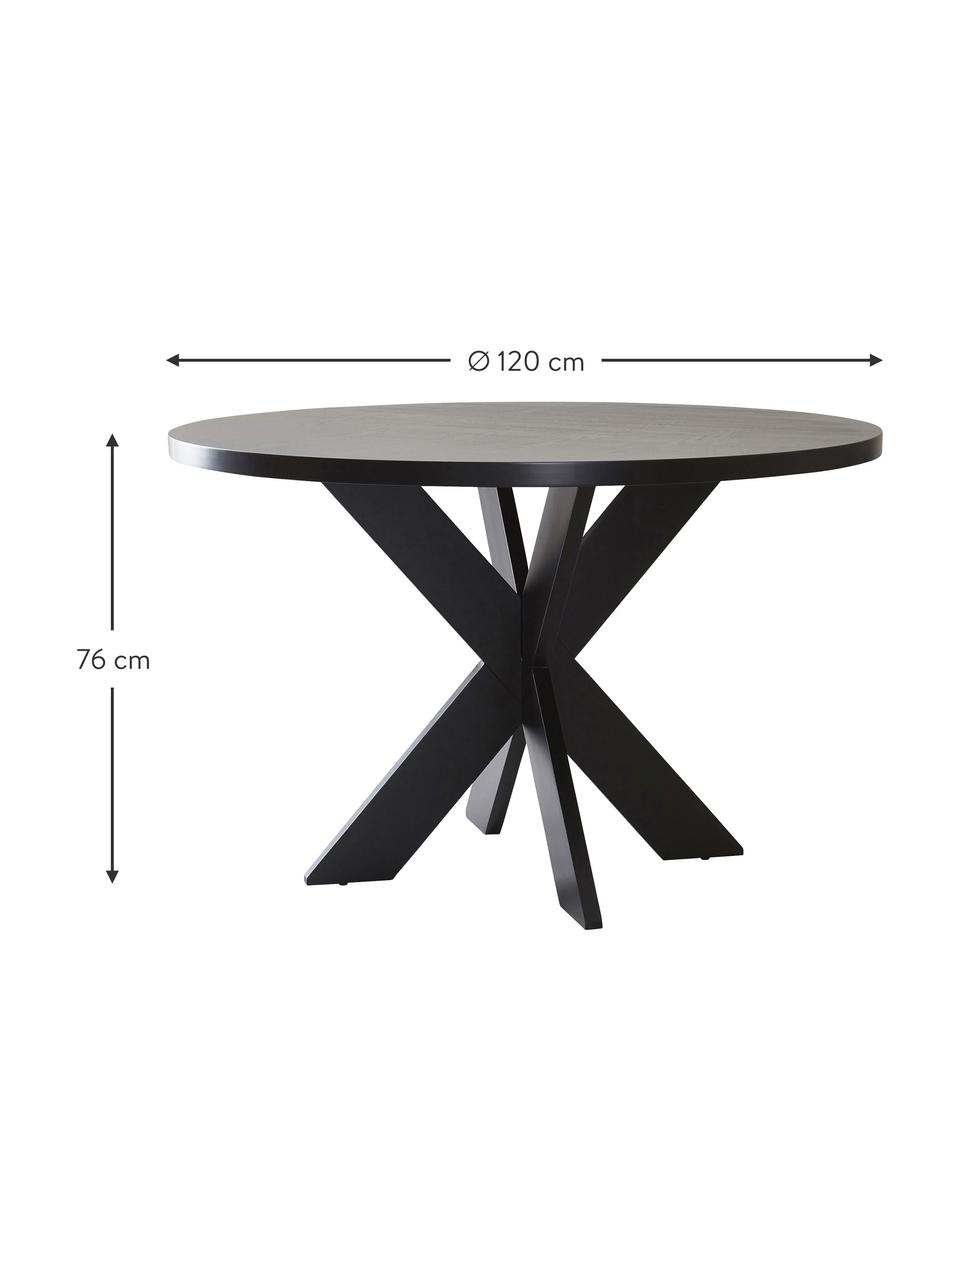 Table ronde en bois Lugnvik, MDF (panneau en fibres de bois à densité moyenne) avec linoléum enduit, Noir, Ø 120 x haut. 76 cm